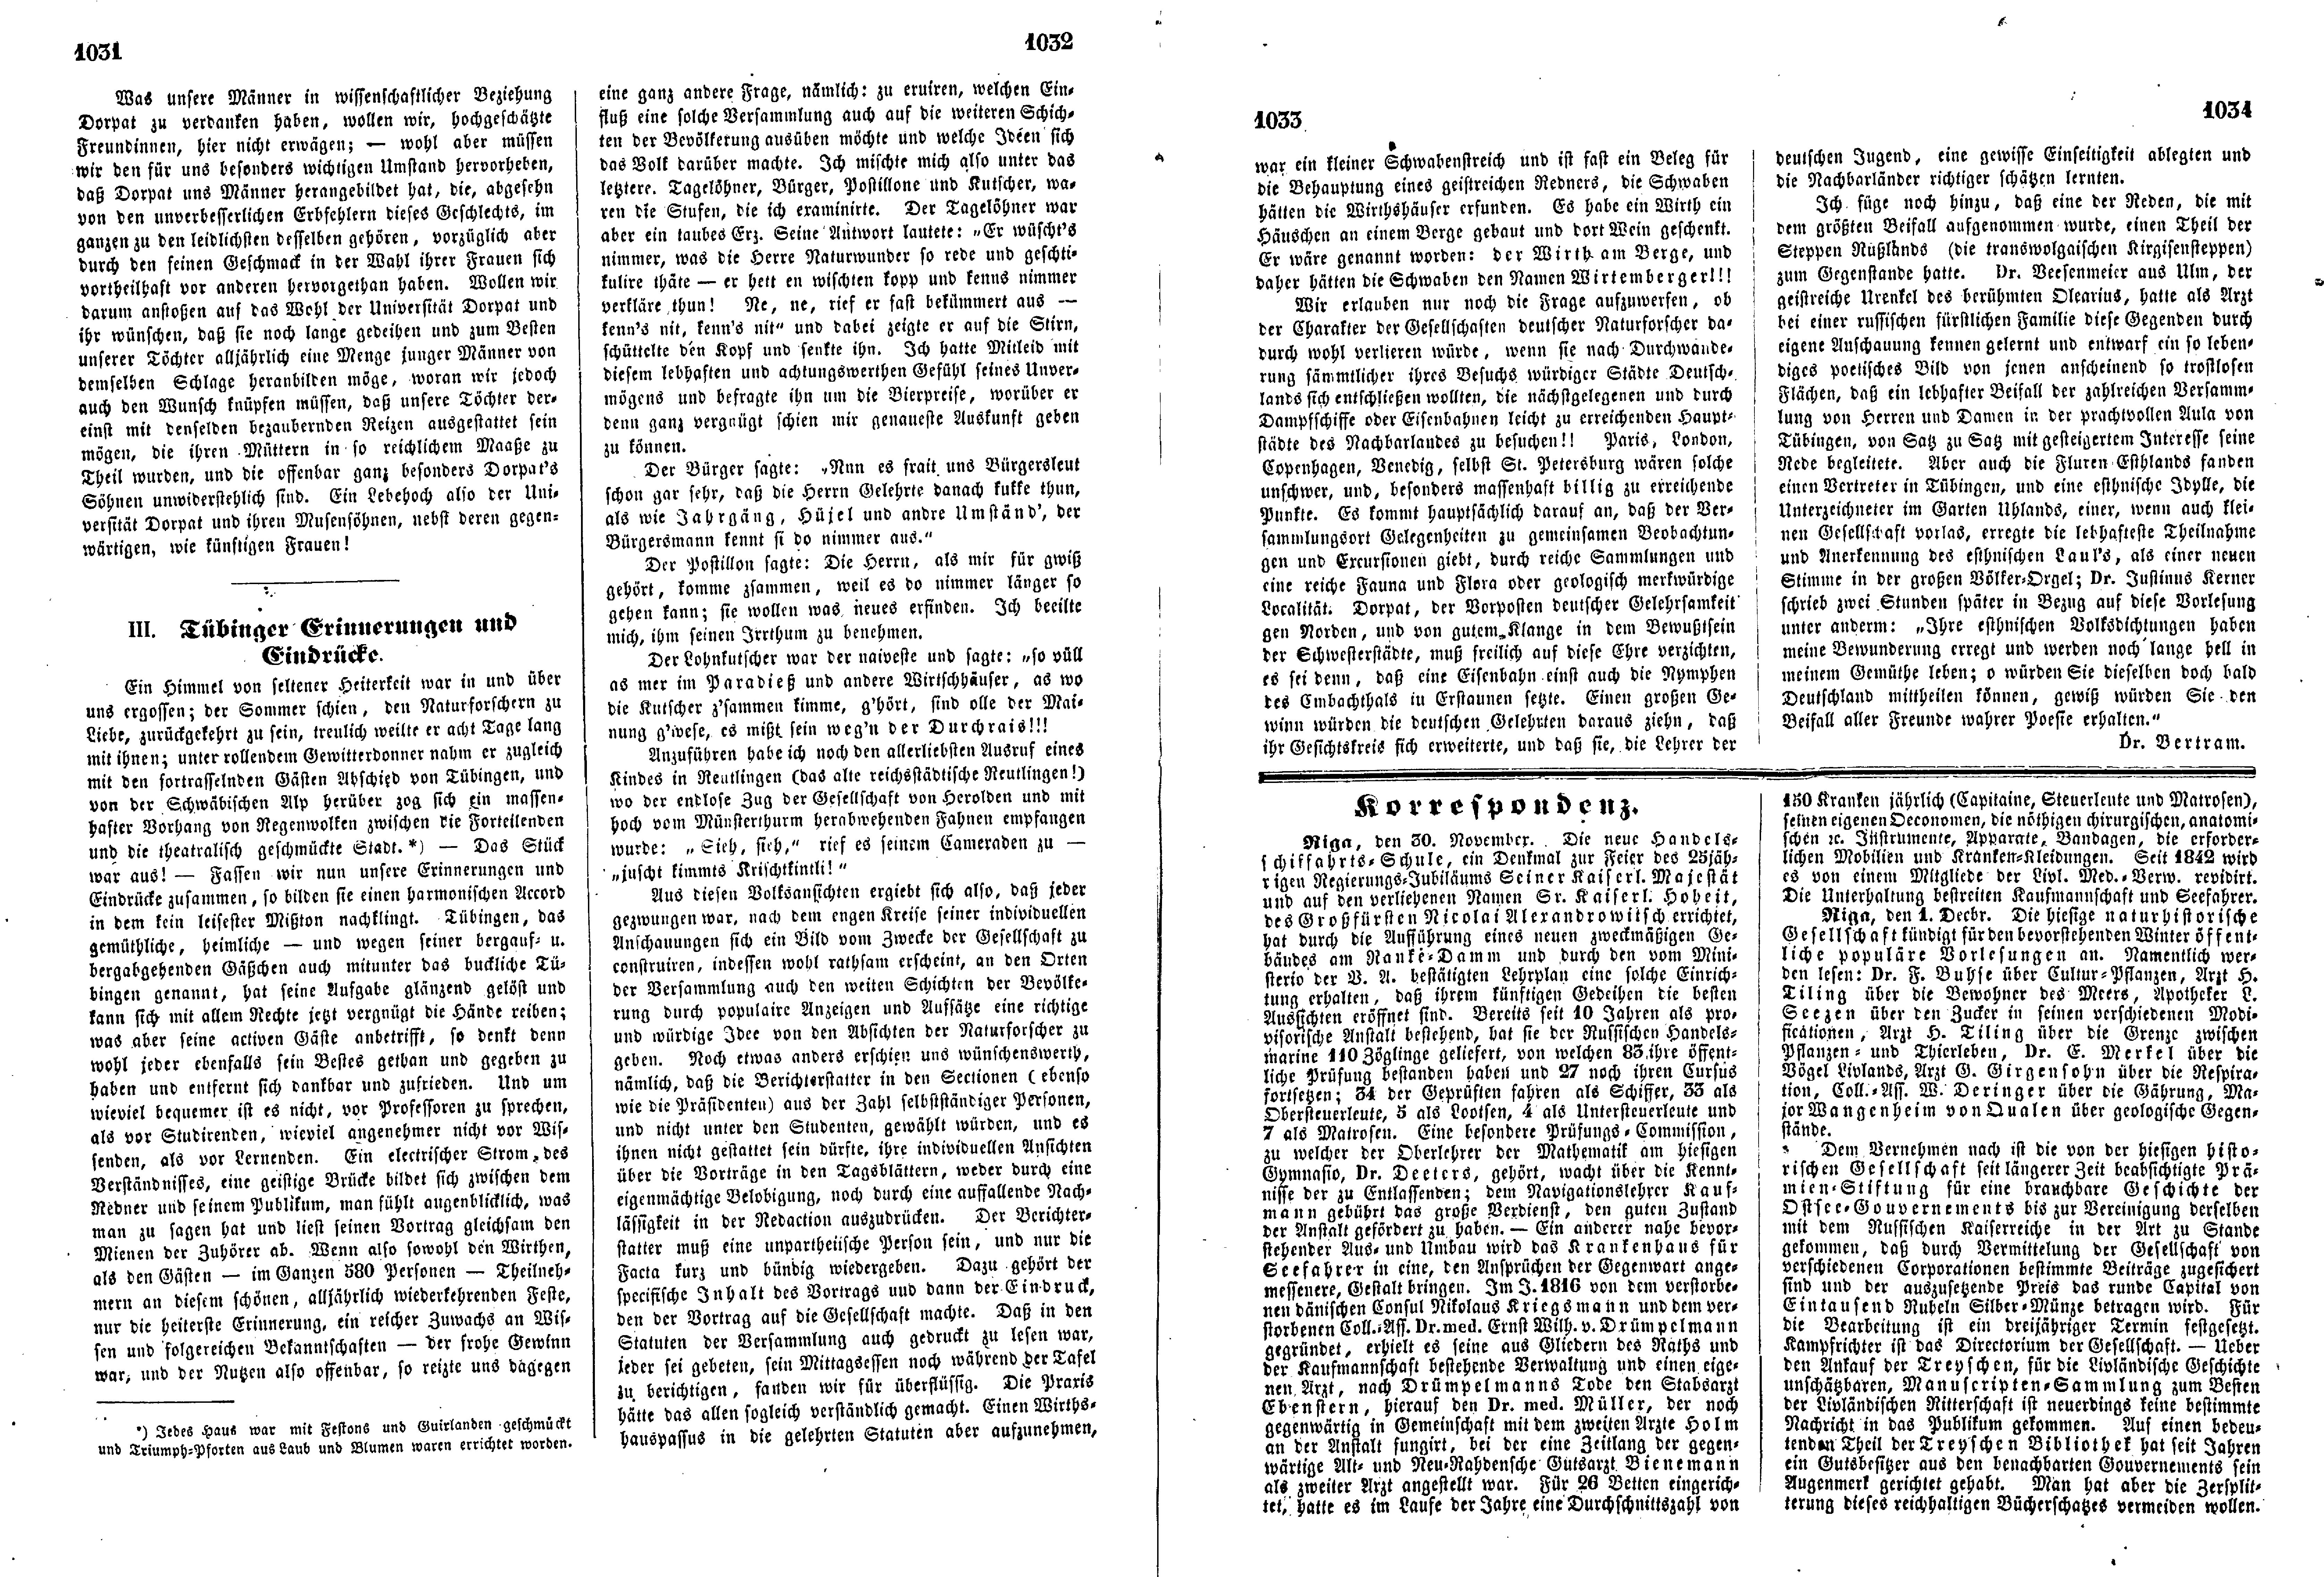 Tübinger Erinnerungen und Eindrücke (1853) | 1. (1031-1034) Põhitekst